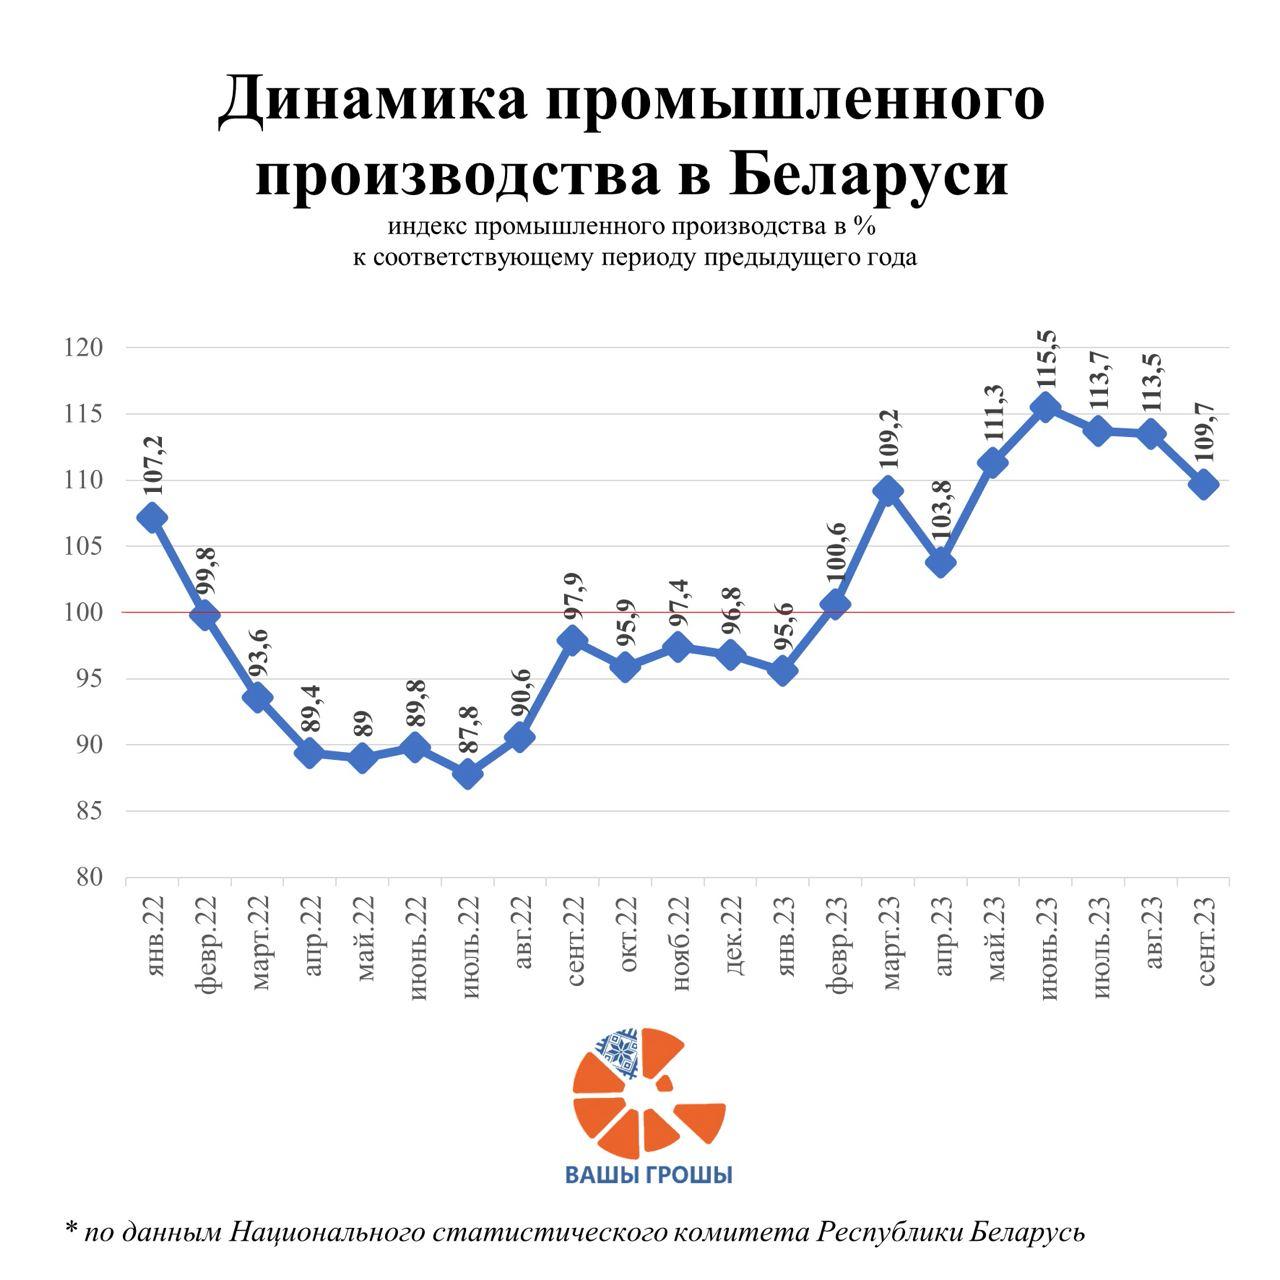 Рост промышленного производства в Беларуси продолжается, но уже не так быстро